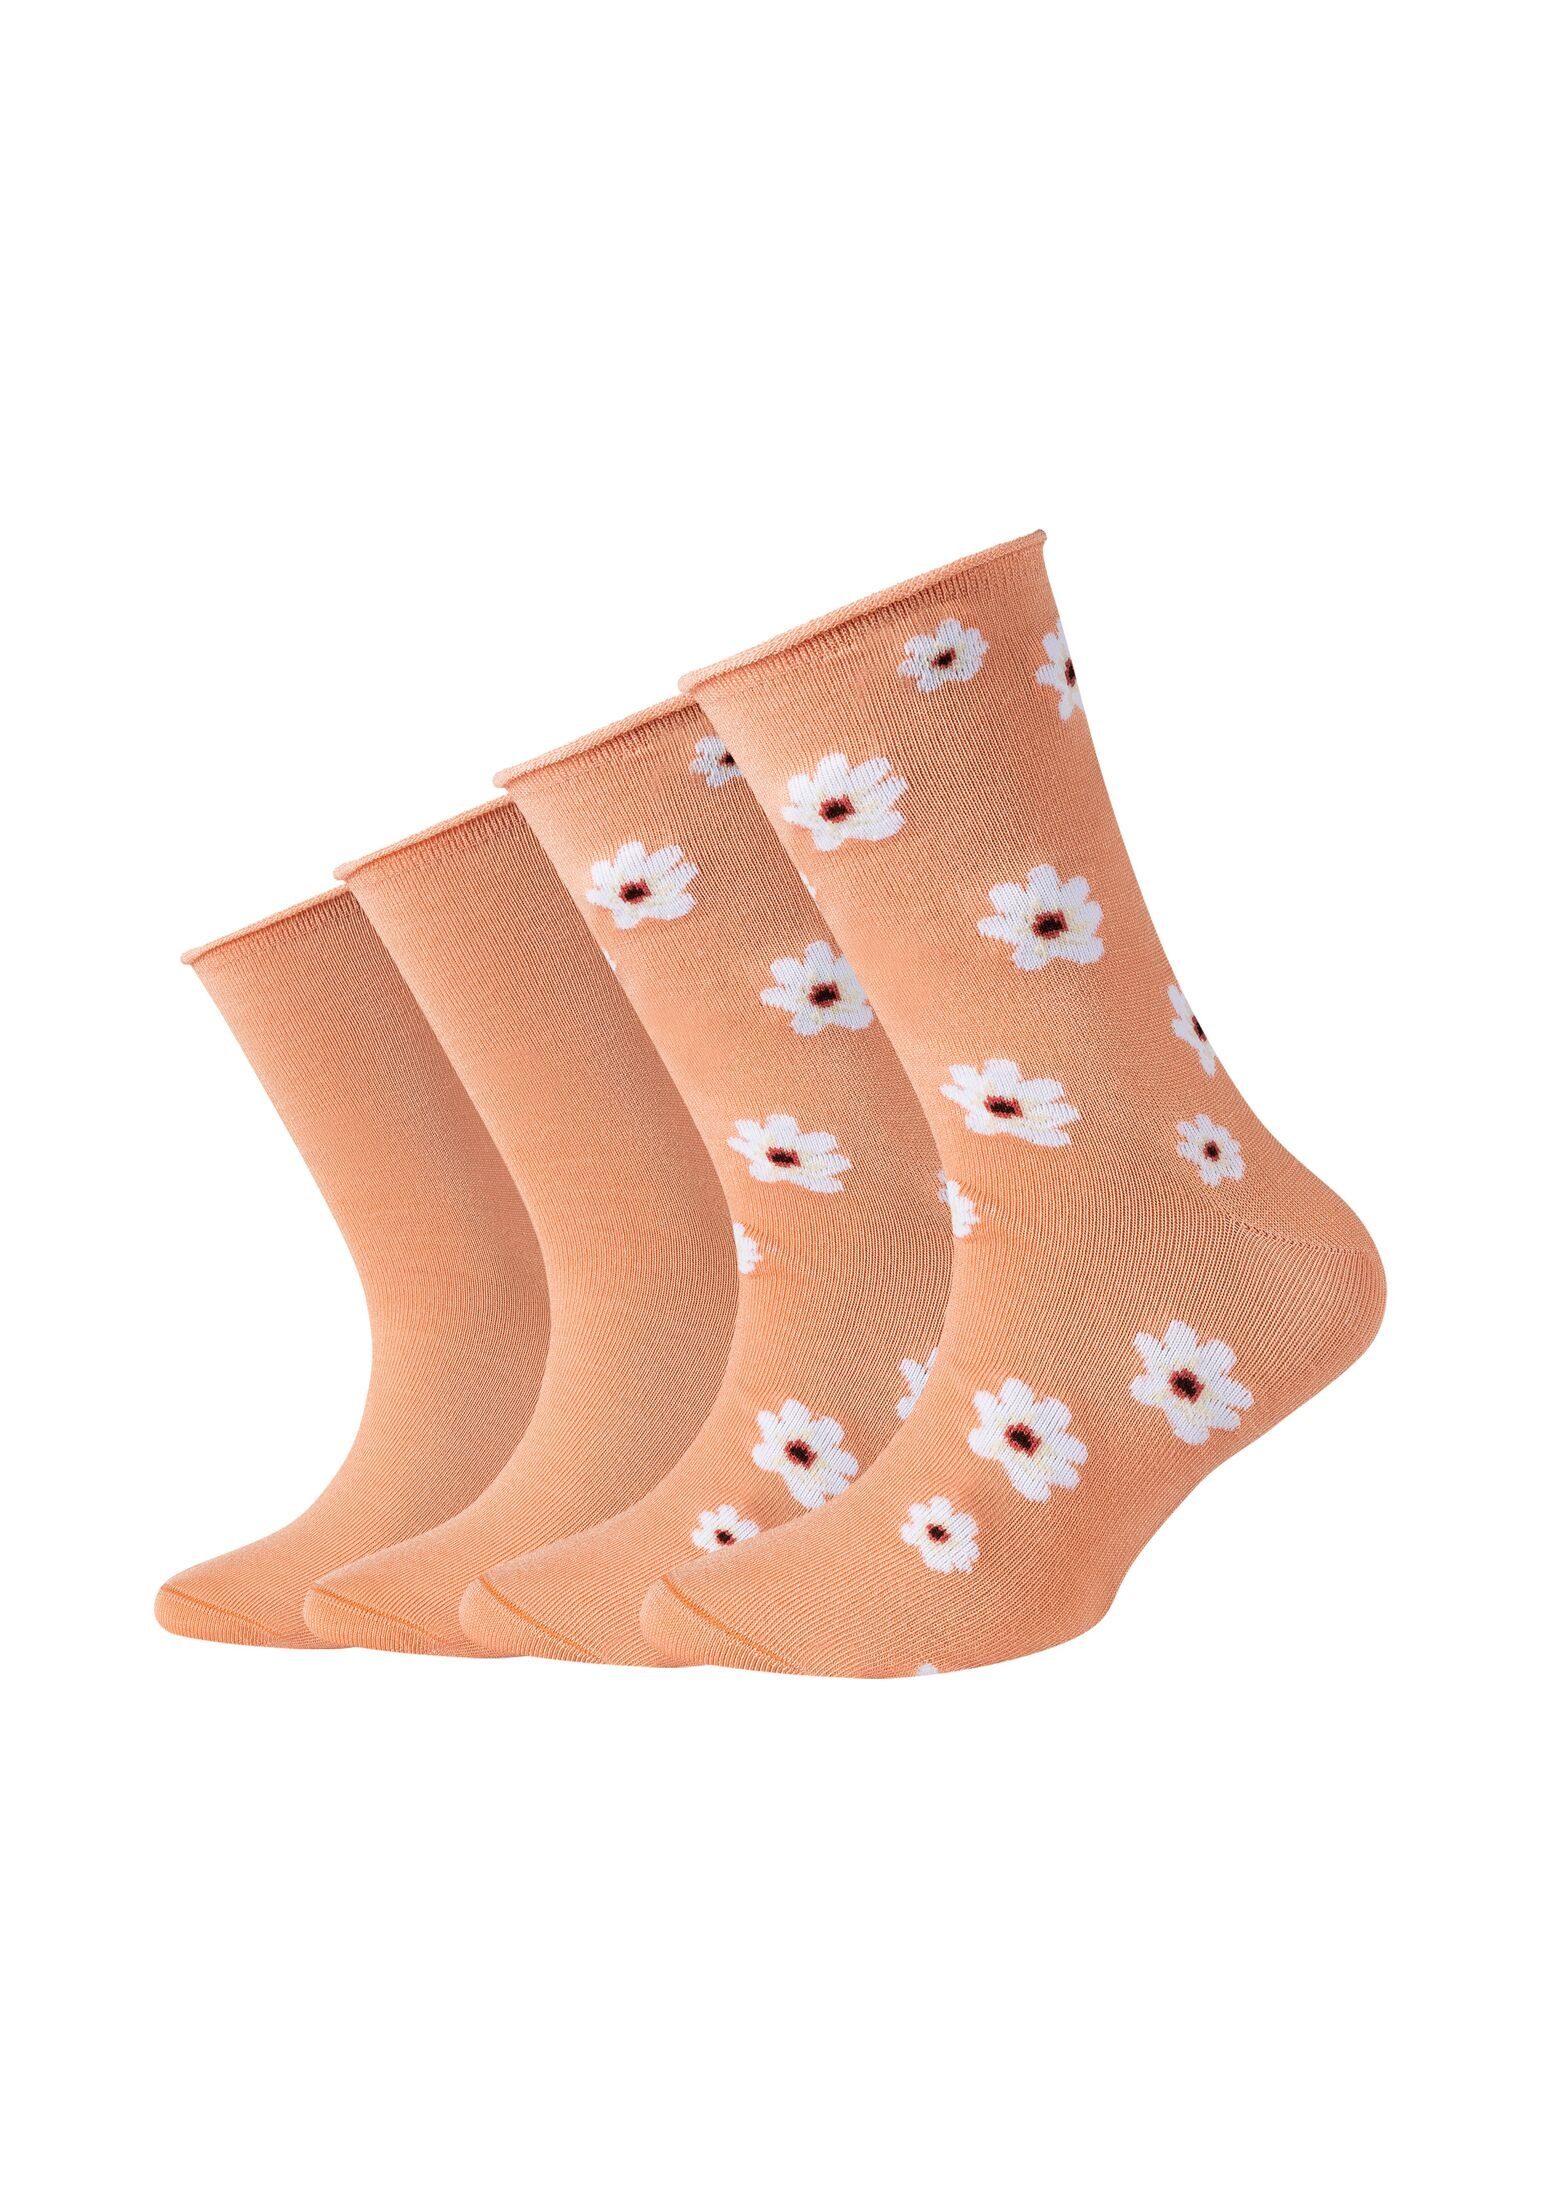 s.Oliver Socken Socken nectar Pack peach 4er